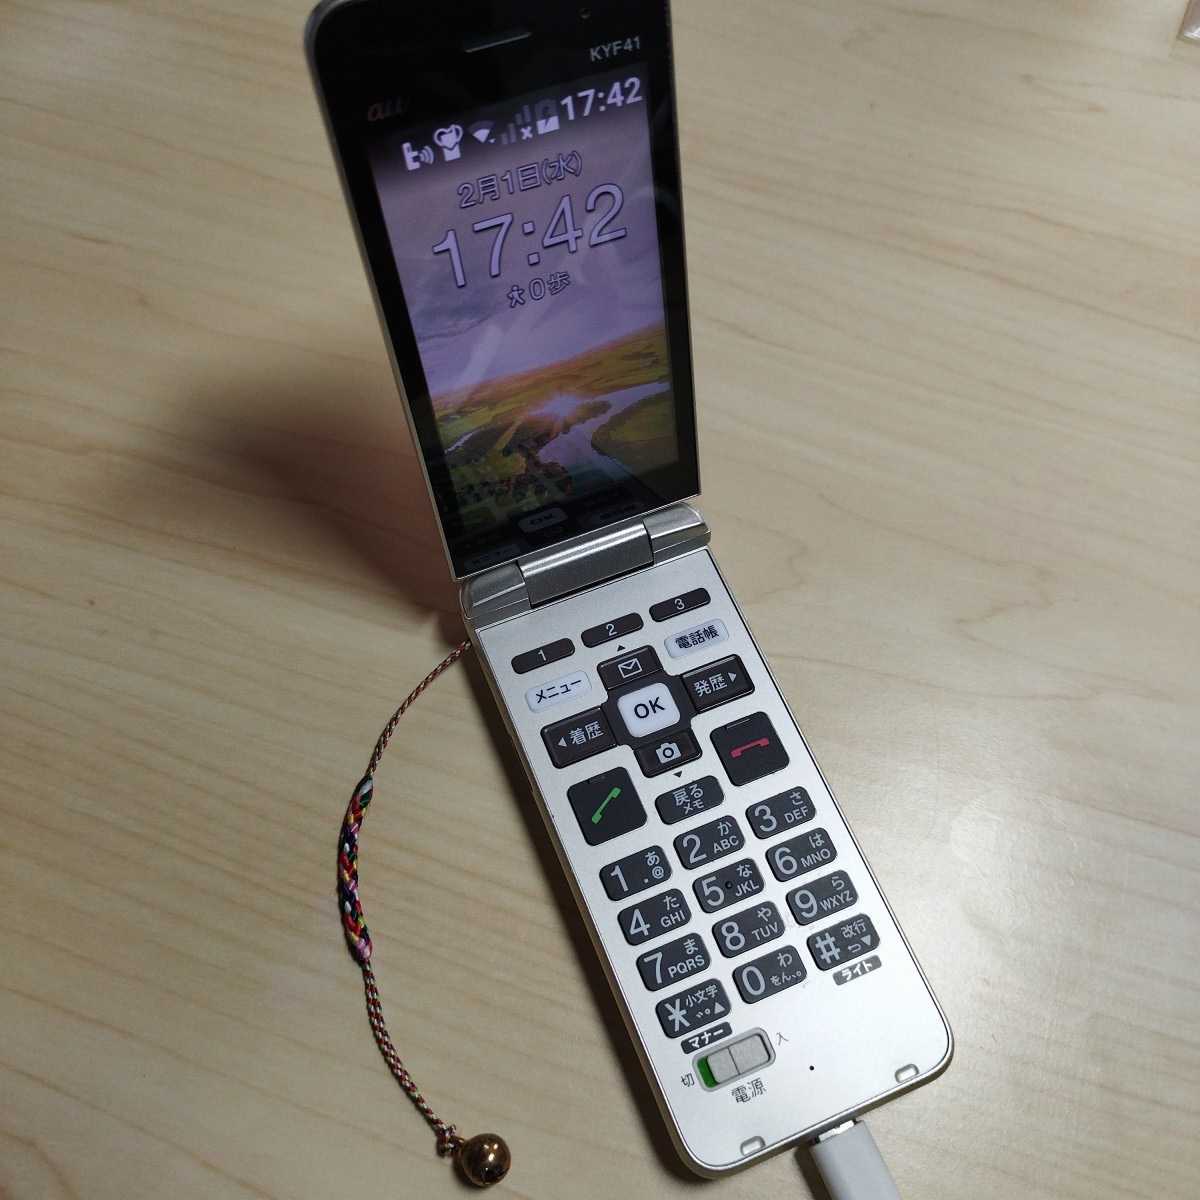 一部動作確認済 京セラ 携帯電話 KYF41 中古美品 ガラケー au ストラップ付き Type-C _画像1